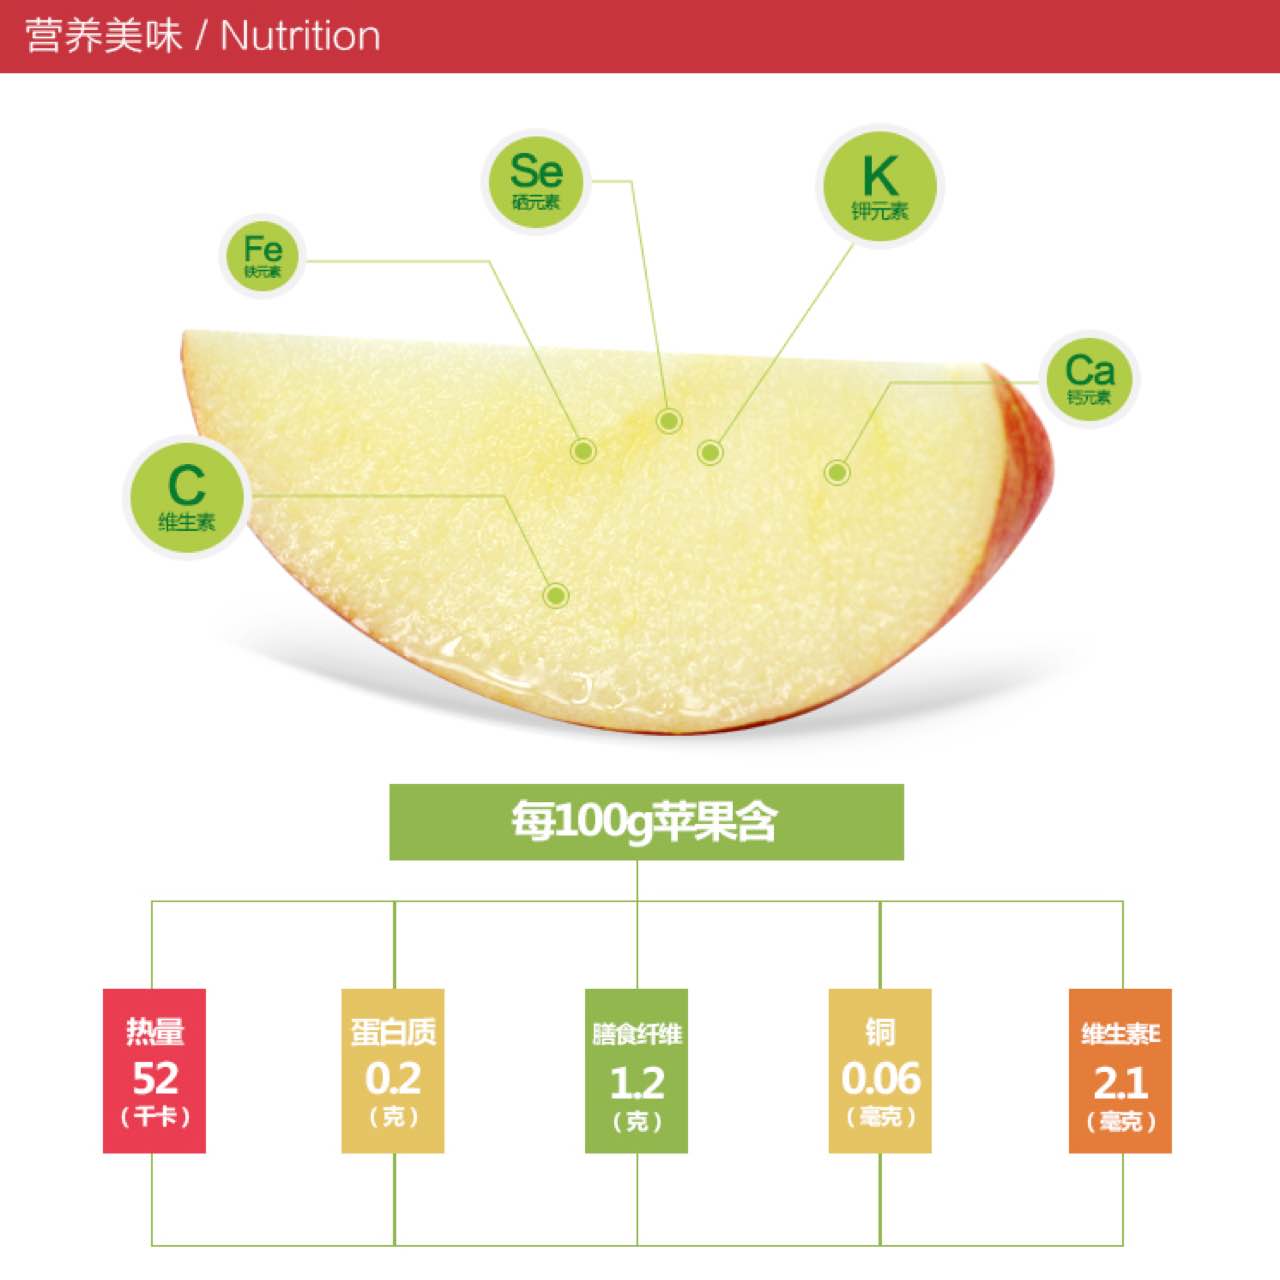 烟台苹果山东特产正宗栖霞红富士苹果新鲜水果5斤